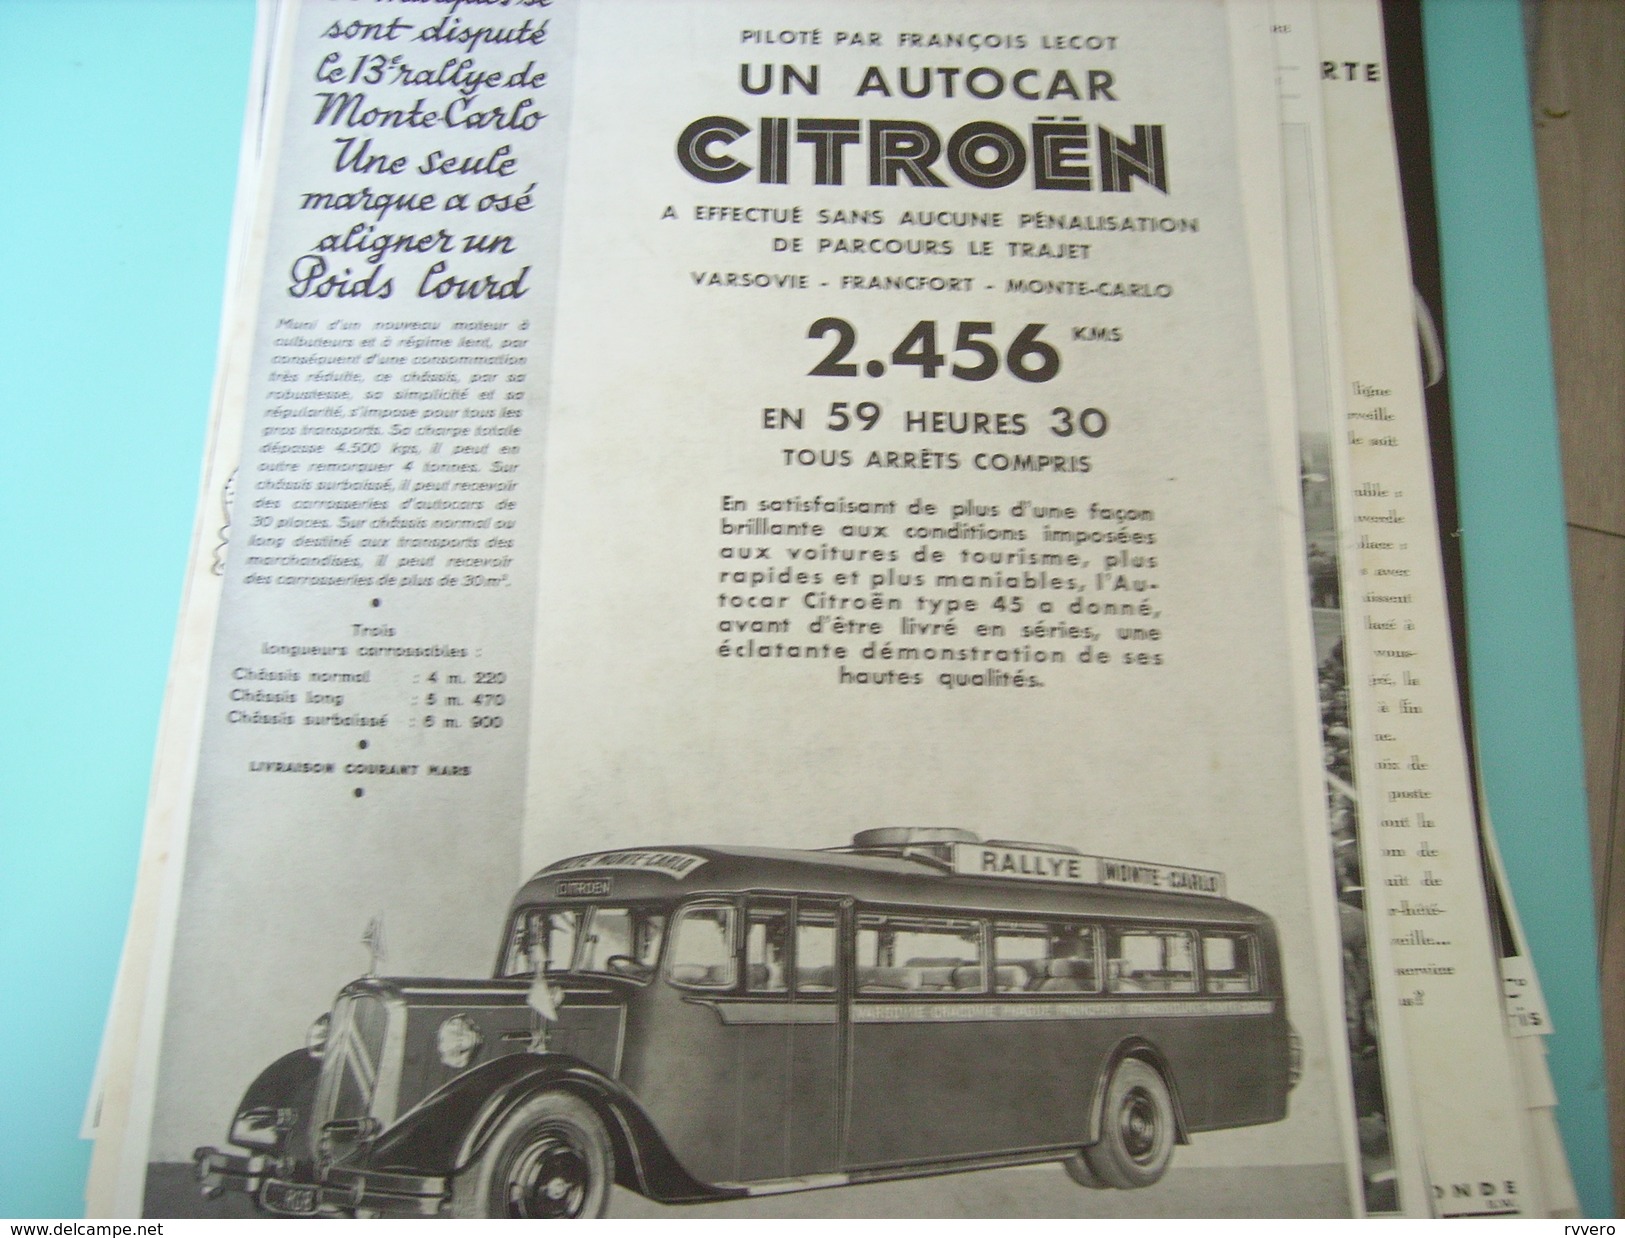 ANCIENNE PUBLICITE AUTOCAR CITROEN PILOTE PAR F.LECOT 1934 RALLY MONTE CARLO - Publicités